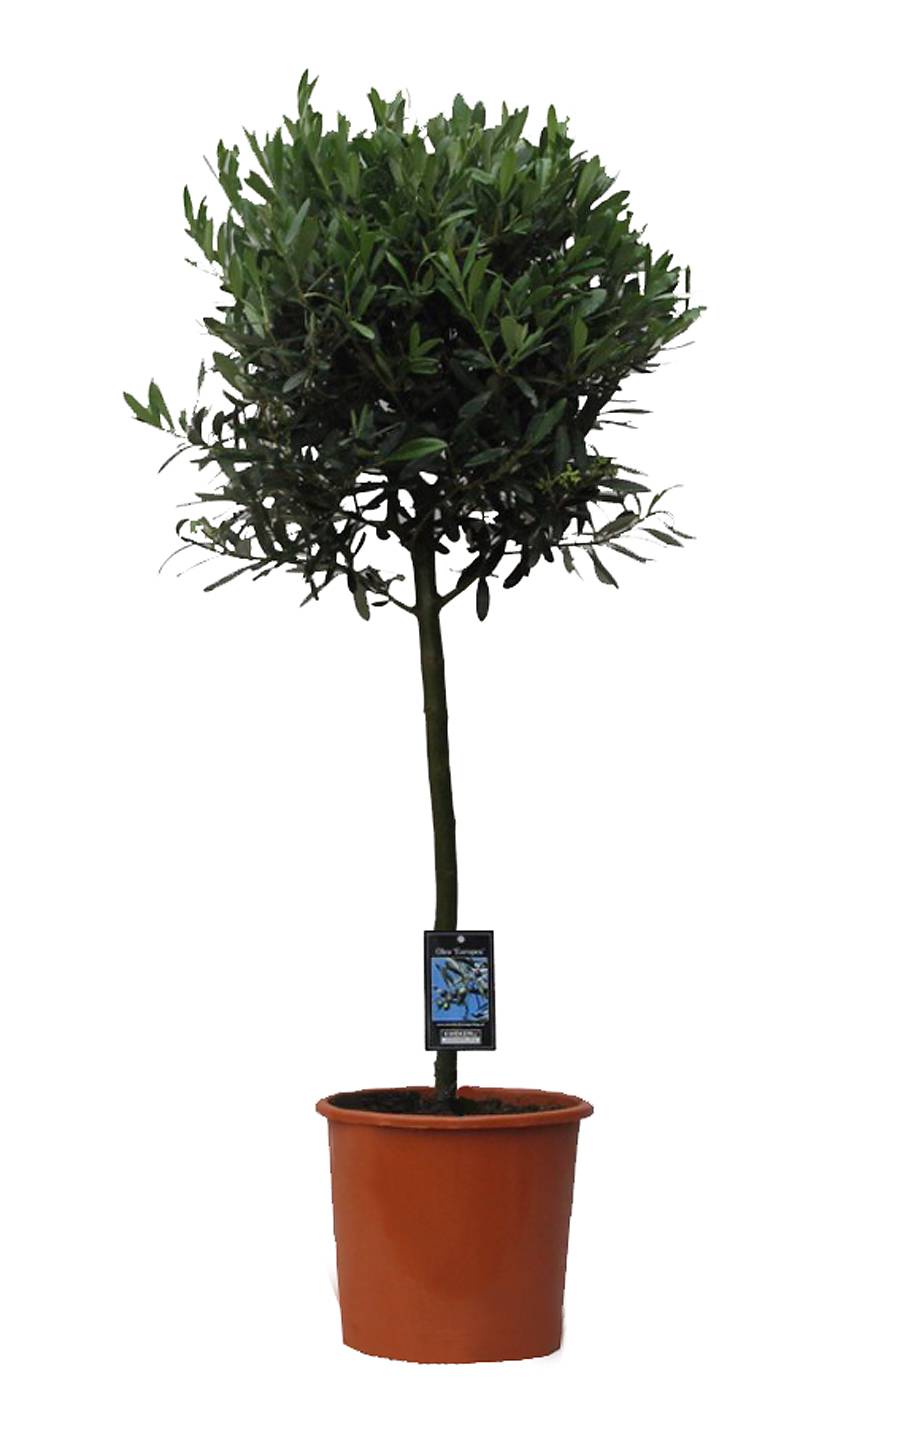 Оливковое дерево, маслина европейская - Olea europaea  D30 H150